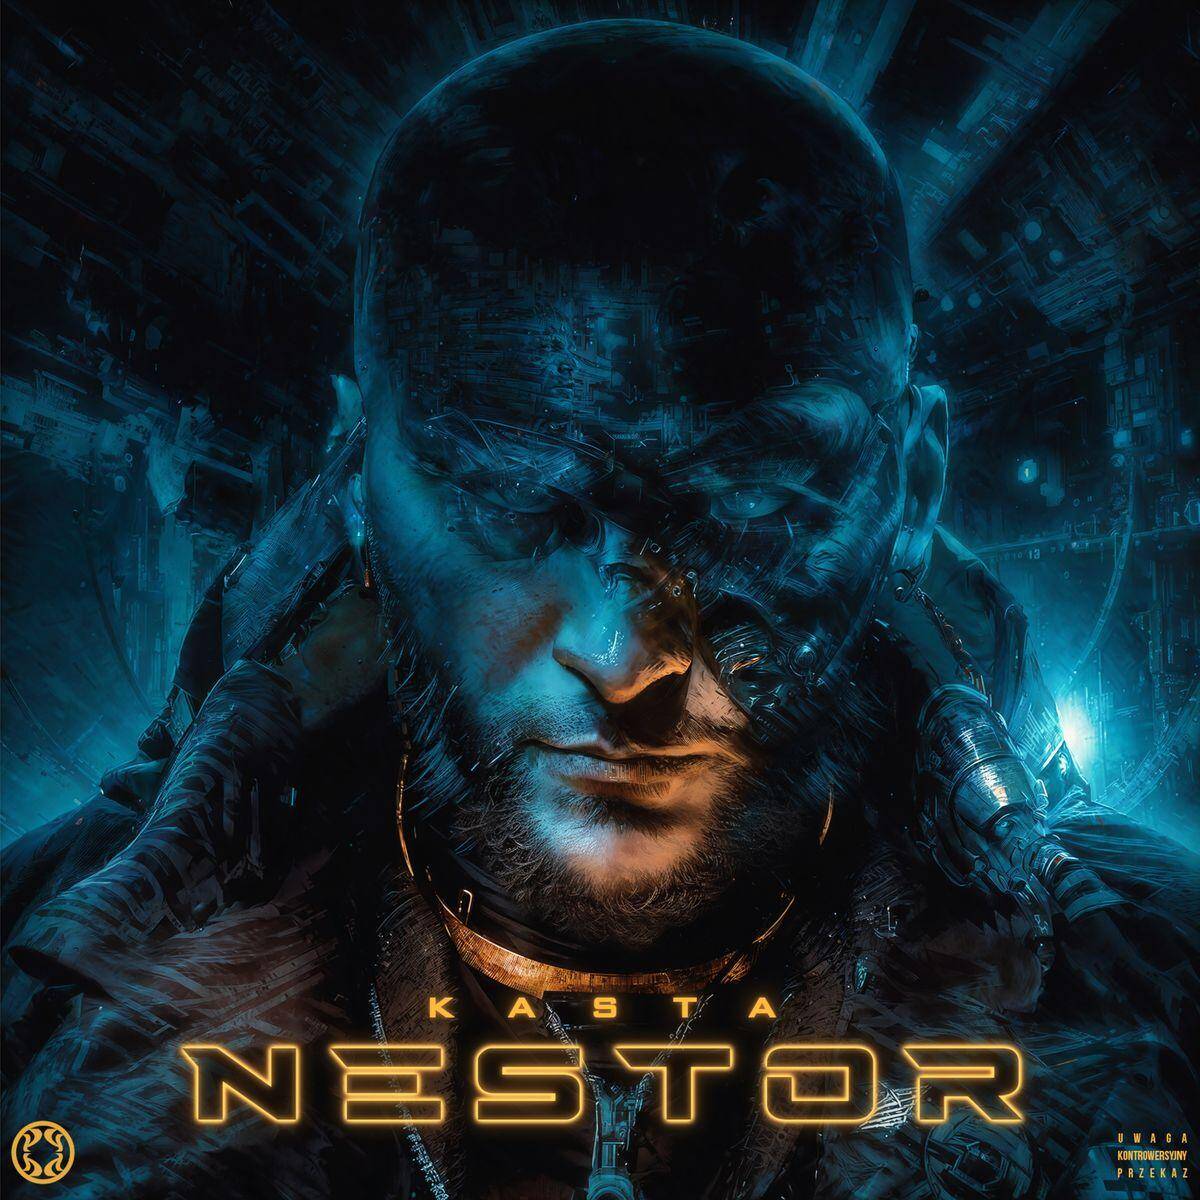 CD Nestor. Kasta